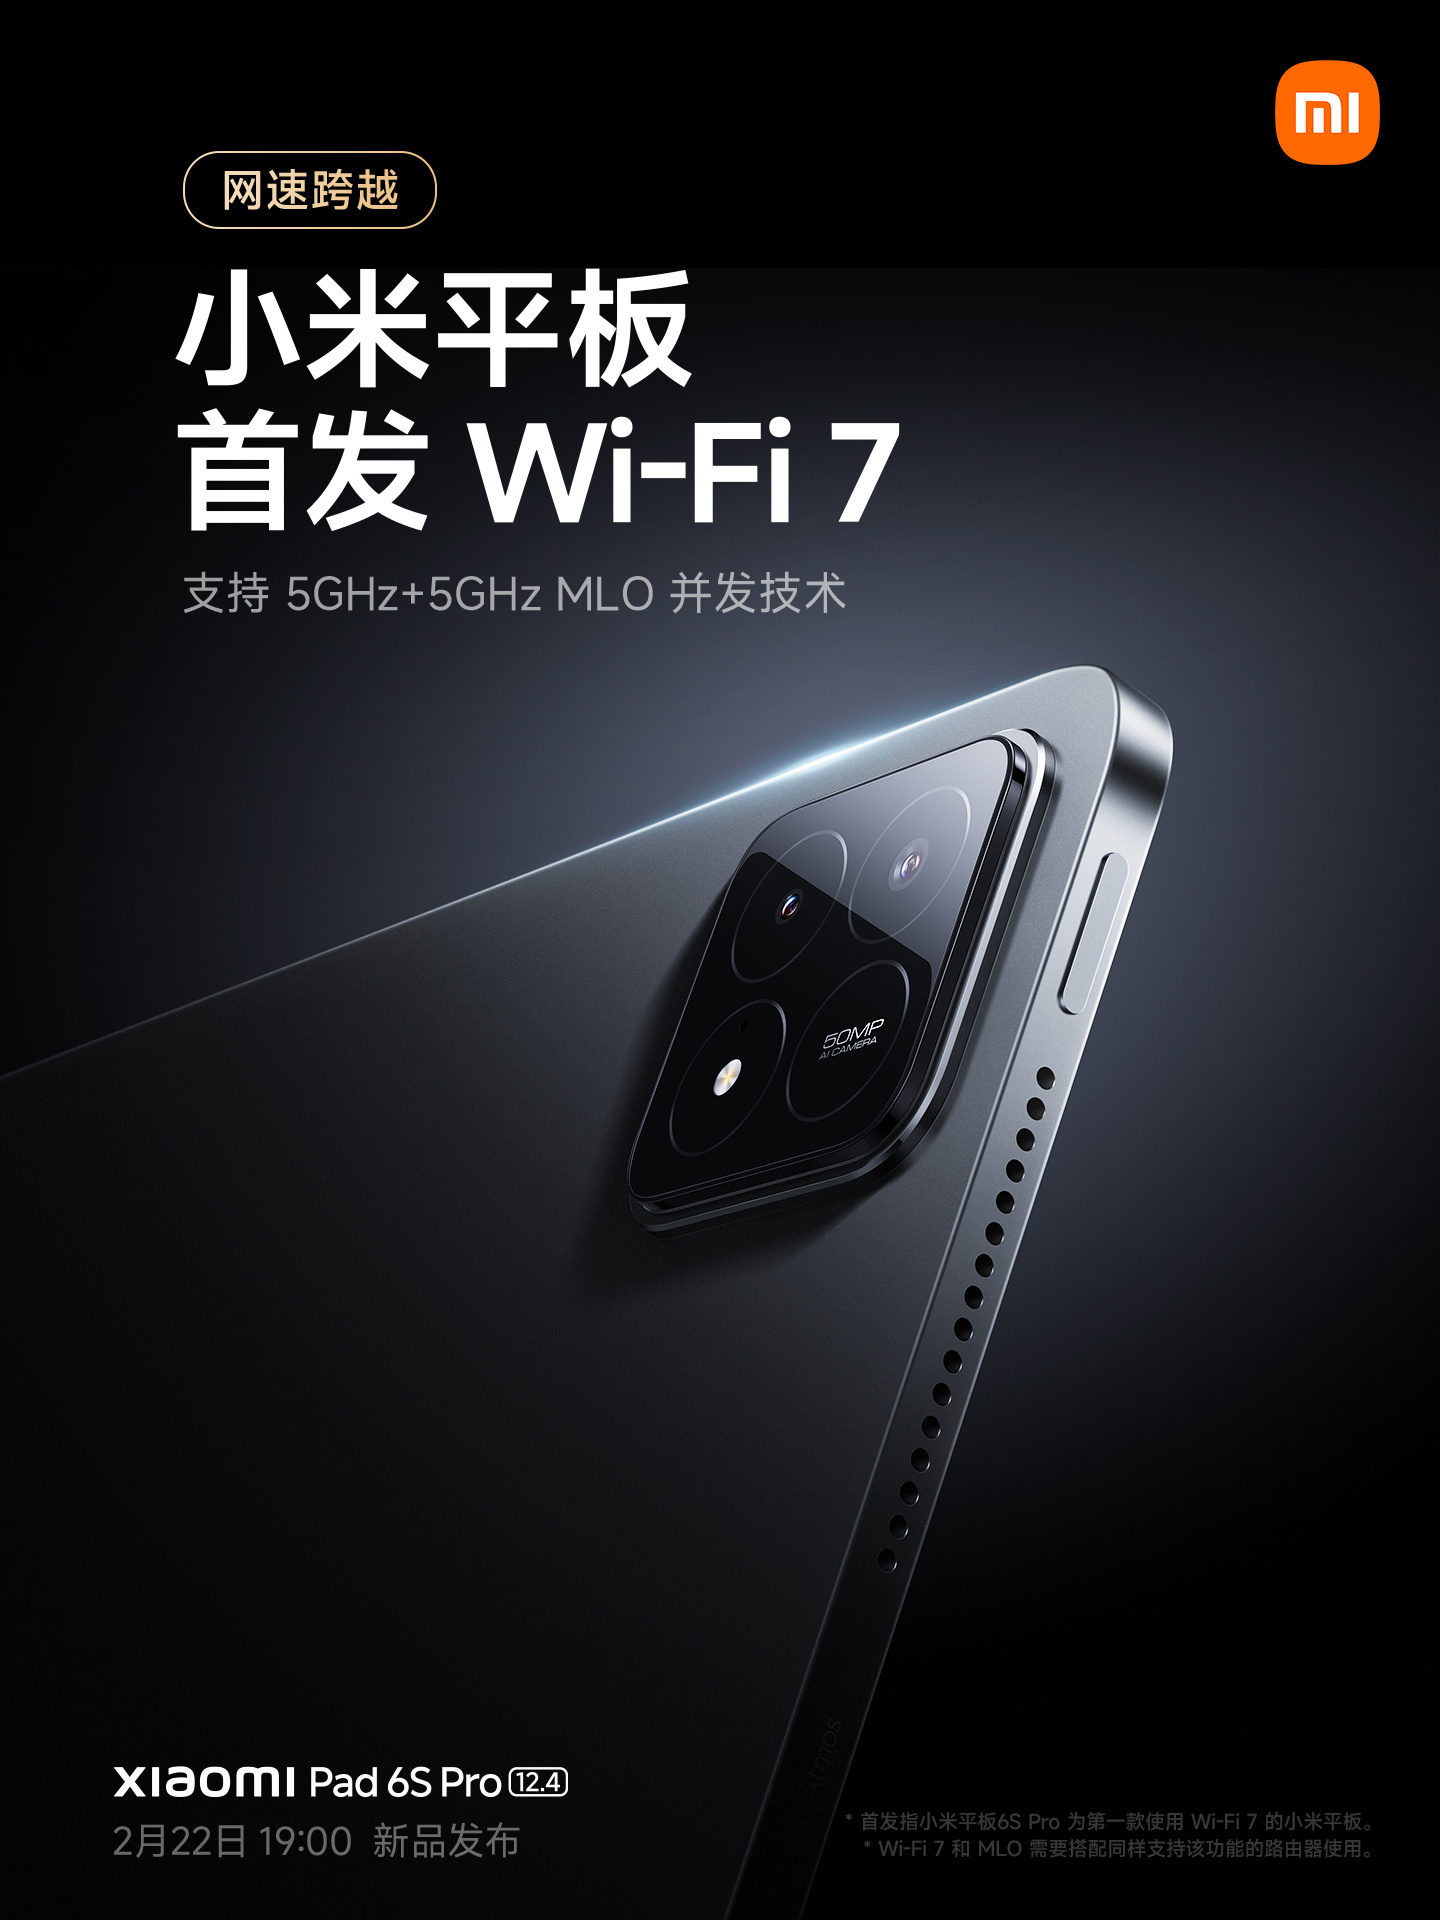 Xiaomi Pad 6S Pro Wi-Fi 7